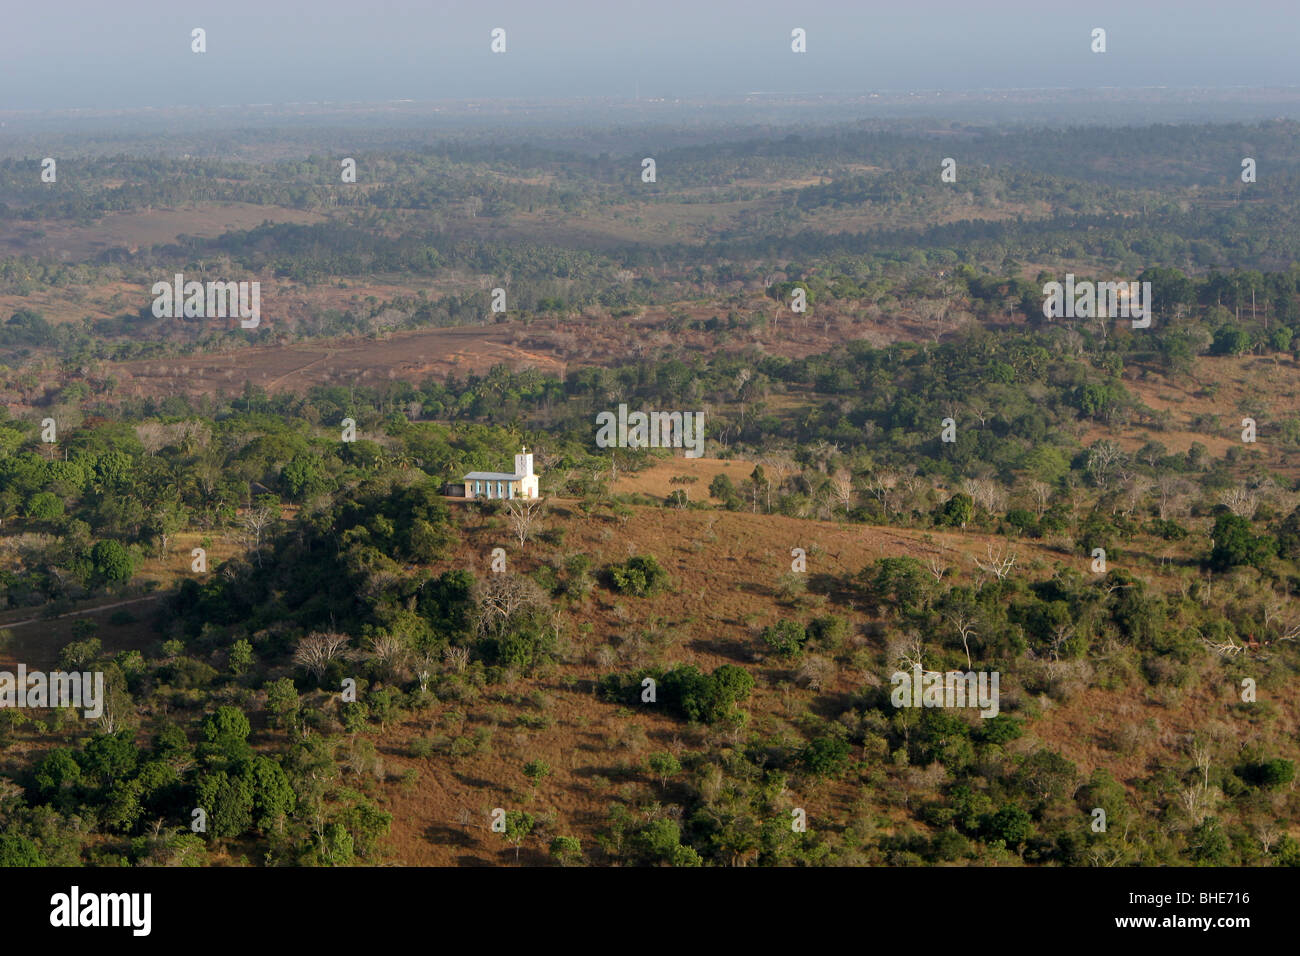 Le site Shimba Hills National Reserve, Kenya Banque D'Images